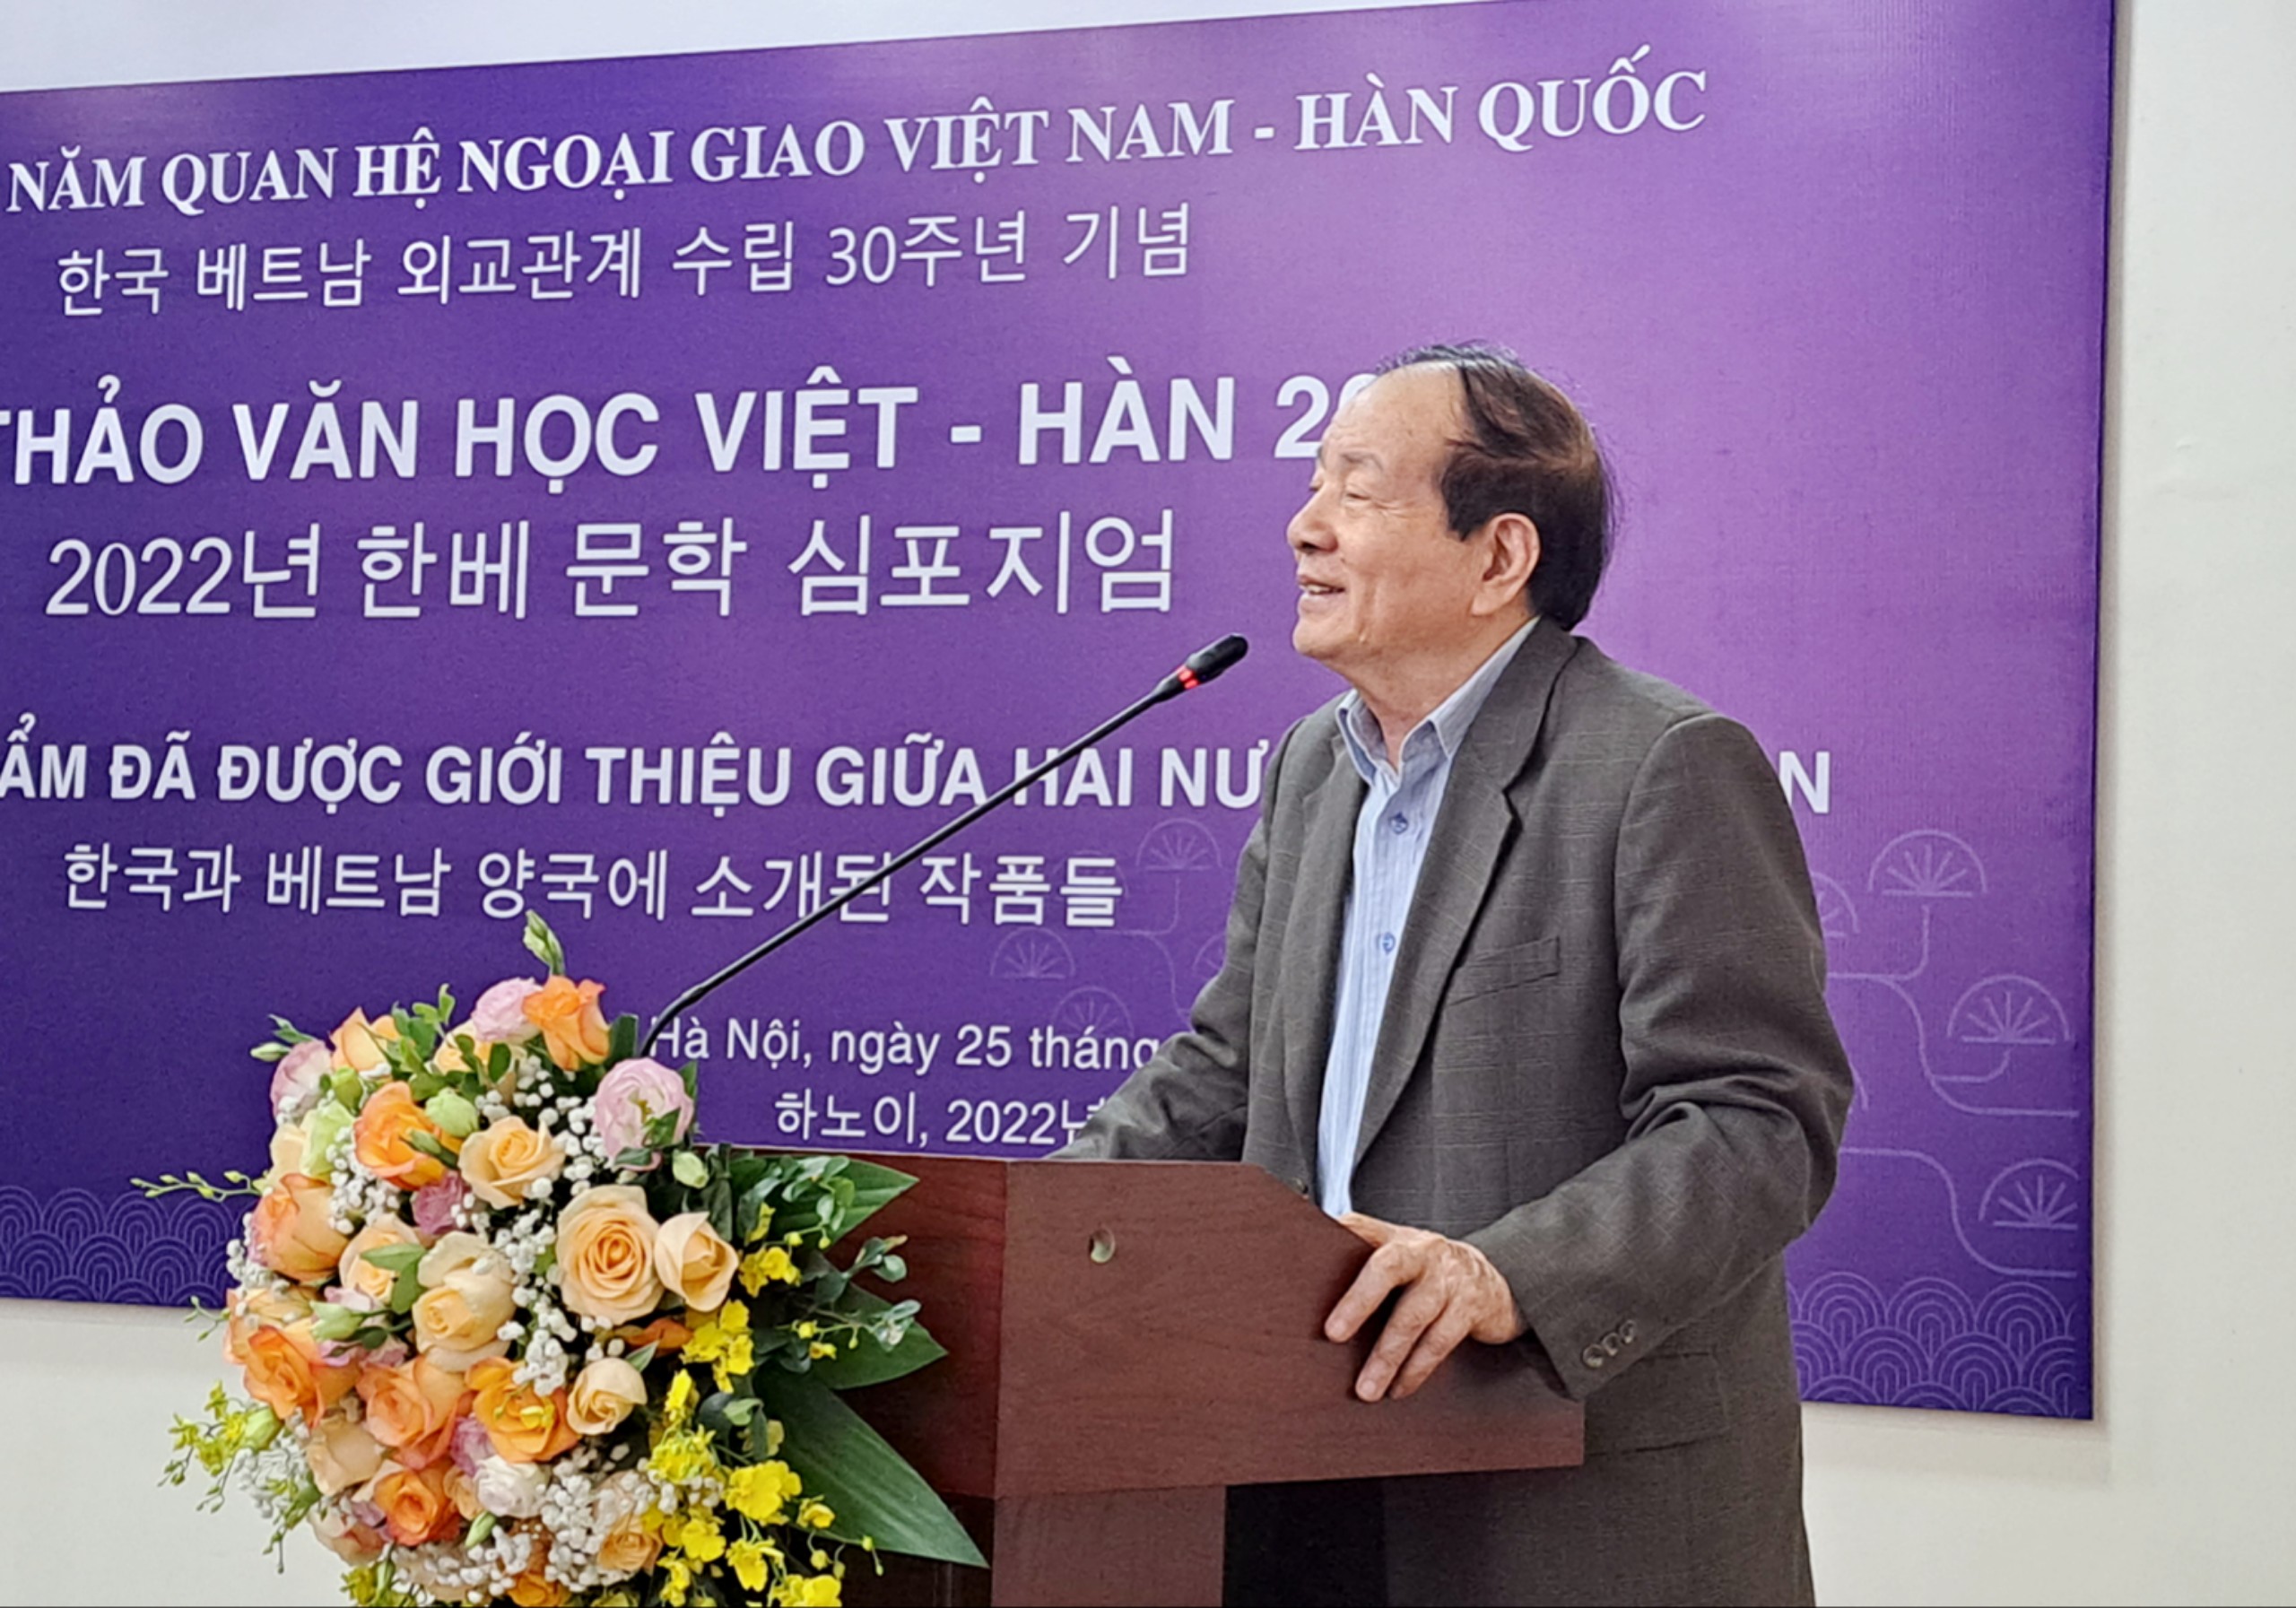 Cần bước ngoặt lớn để văn học Việt Nam được hiện diện nhiều hơn tại Hàn Quốc - 6